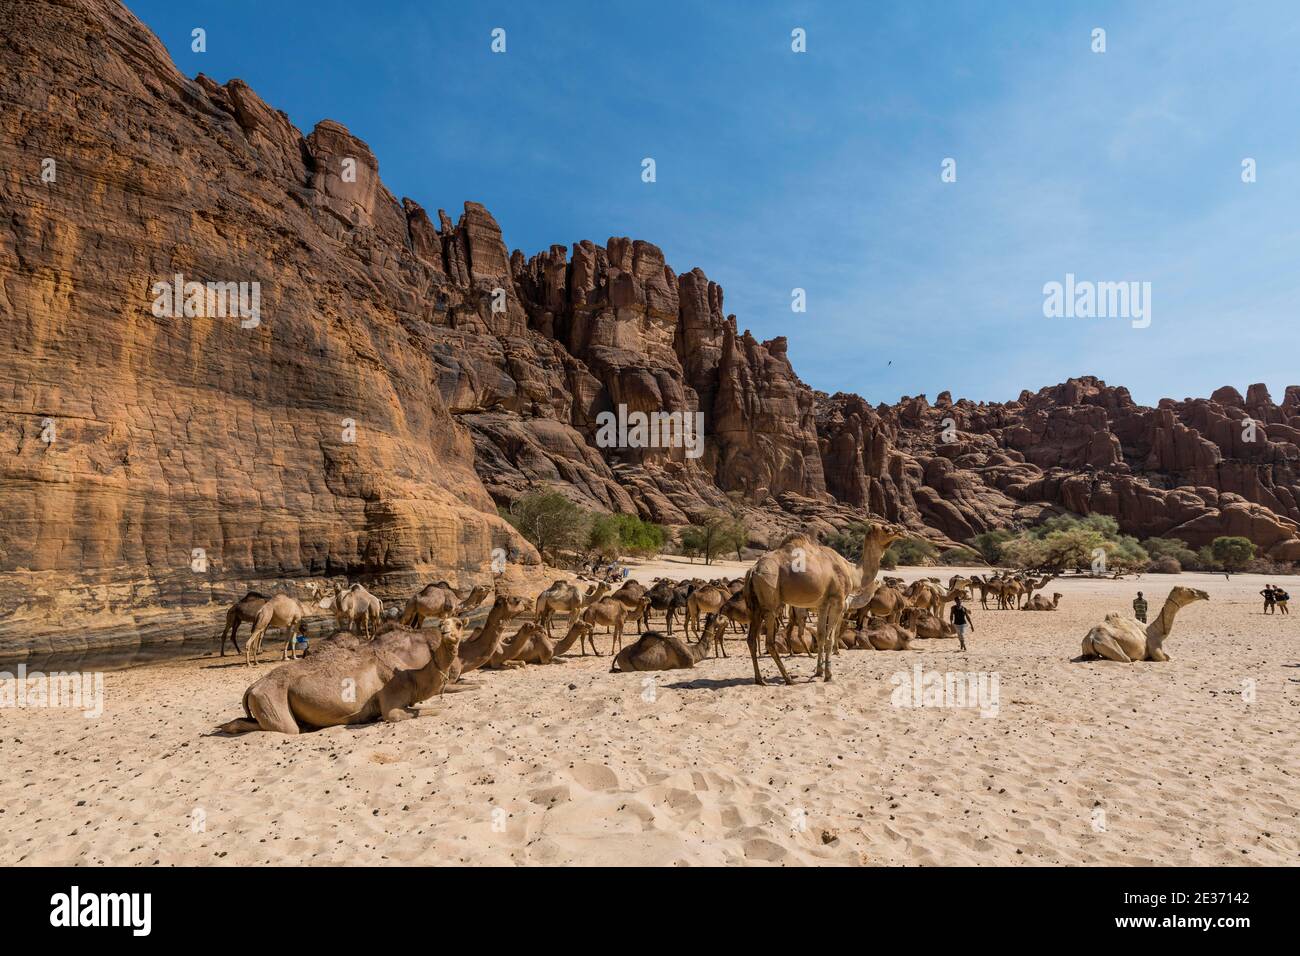 Manada de camellos, agujero de agua Guelta d'Archei, meseta Ennedi, Chad Foto de stock